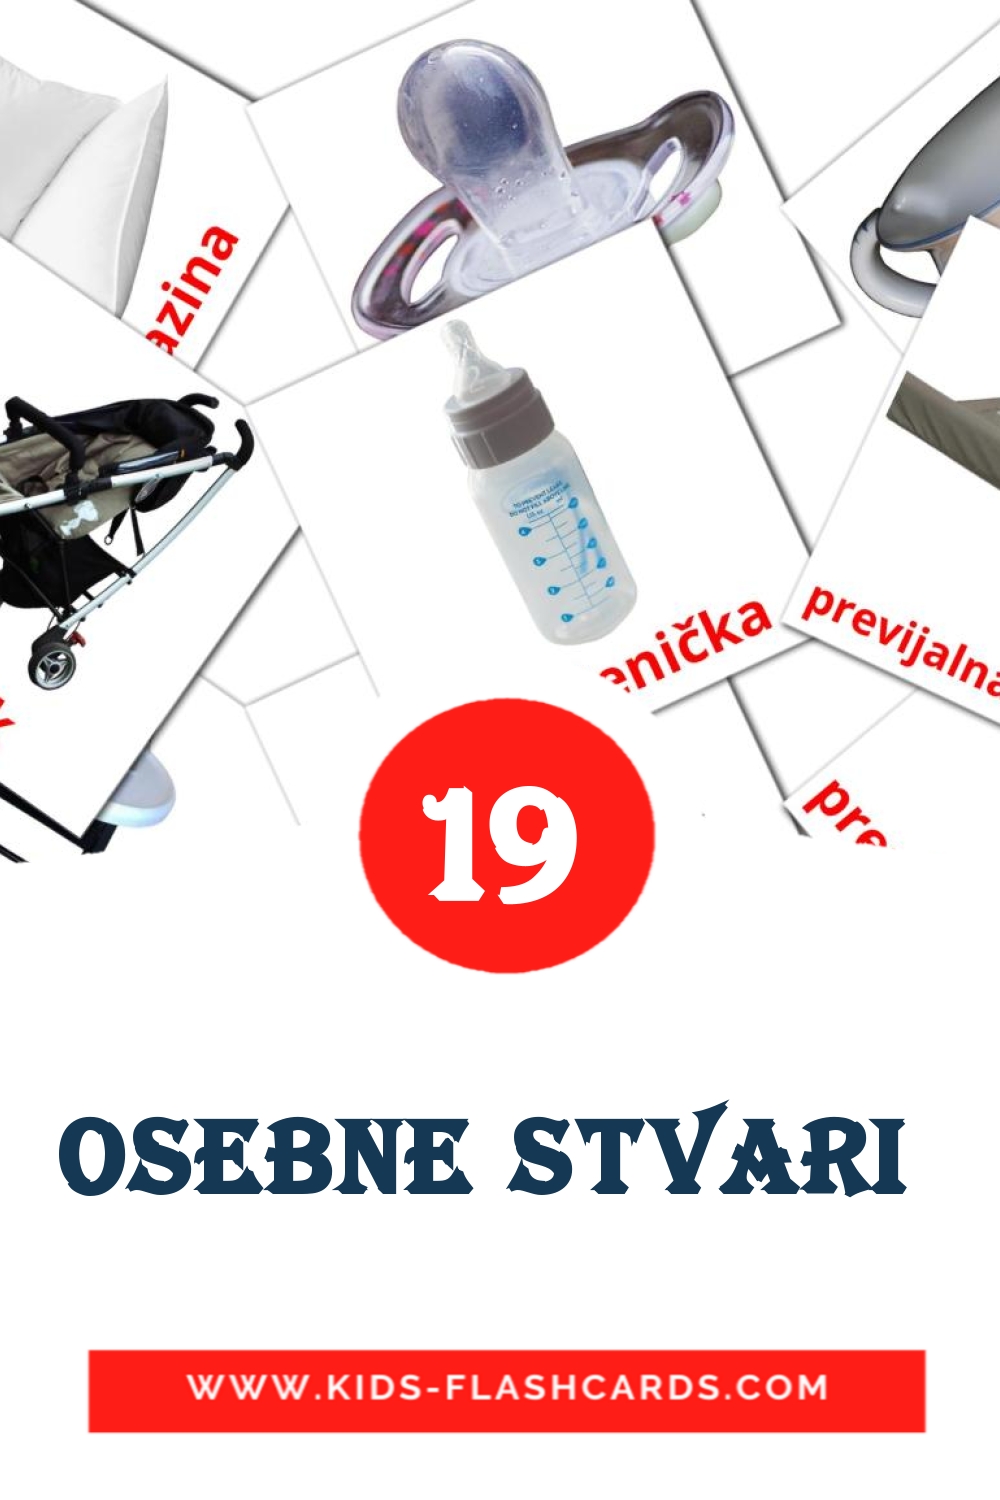 19 Osebne stvari  Bildkarten für den Kindergarten auf Slowenisch